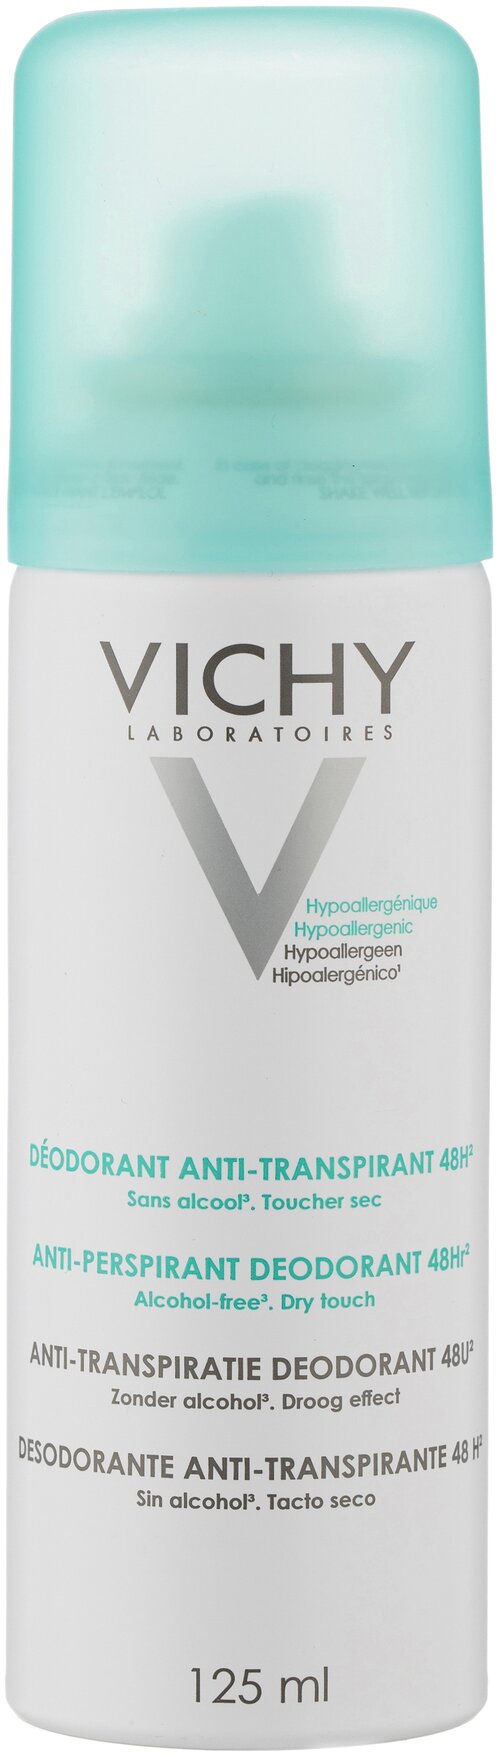 Vichy Дезодорант-антиперспирант регулирующий избыточное потоотделение, спрей, 125 мл, 75 г